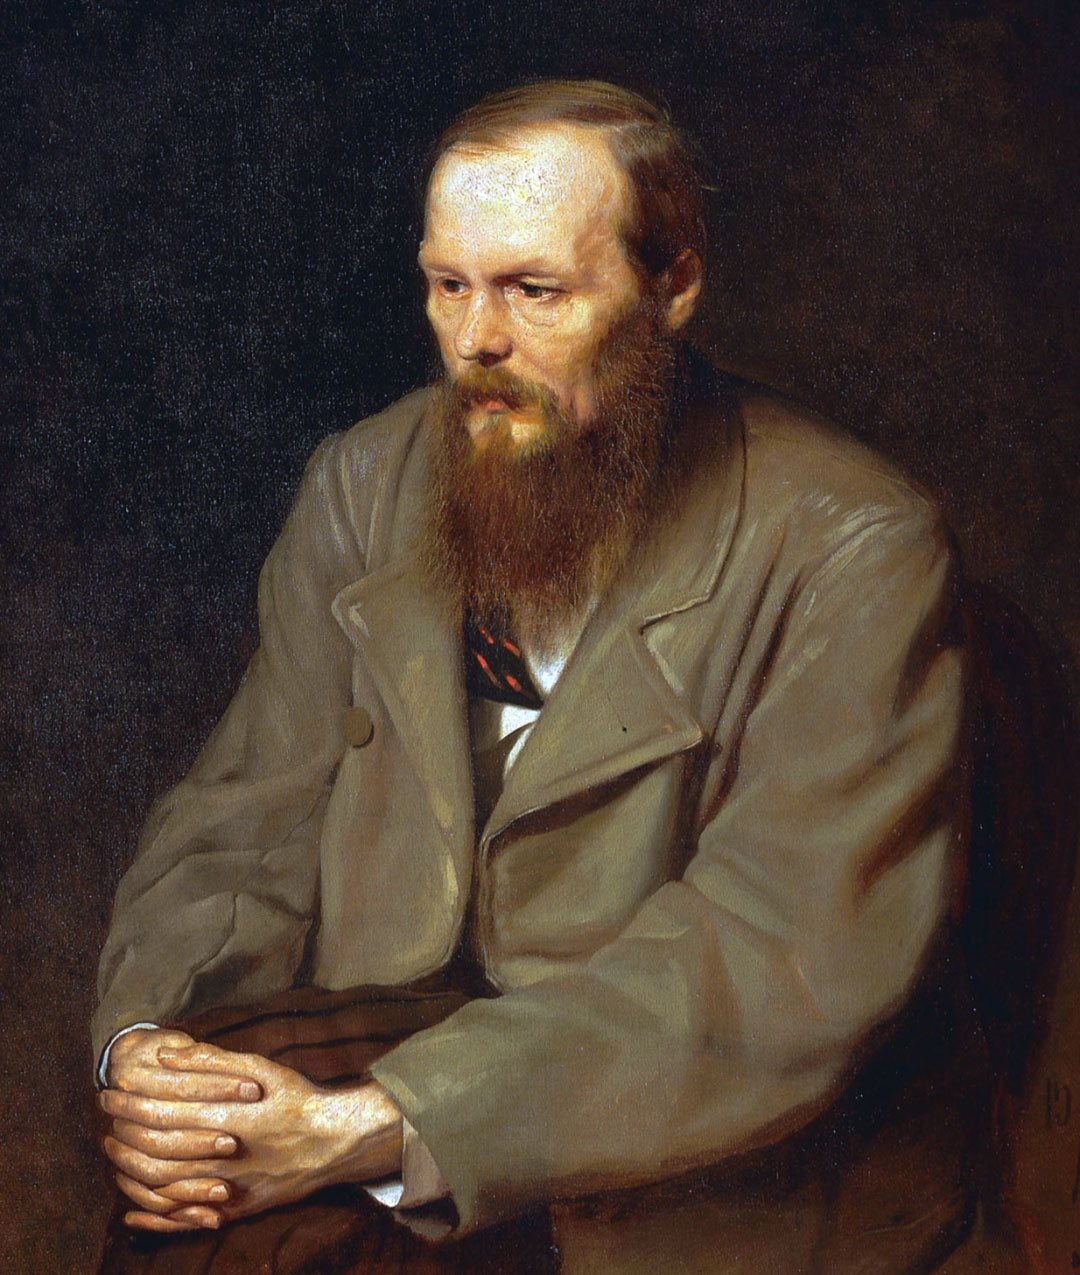  Fyodor Dostoyevsky, biografi: historie, liv og værker